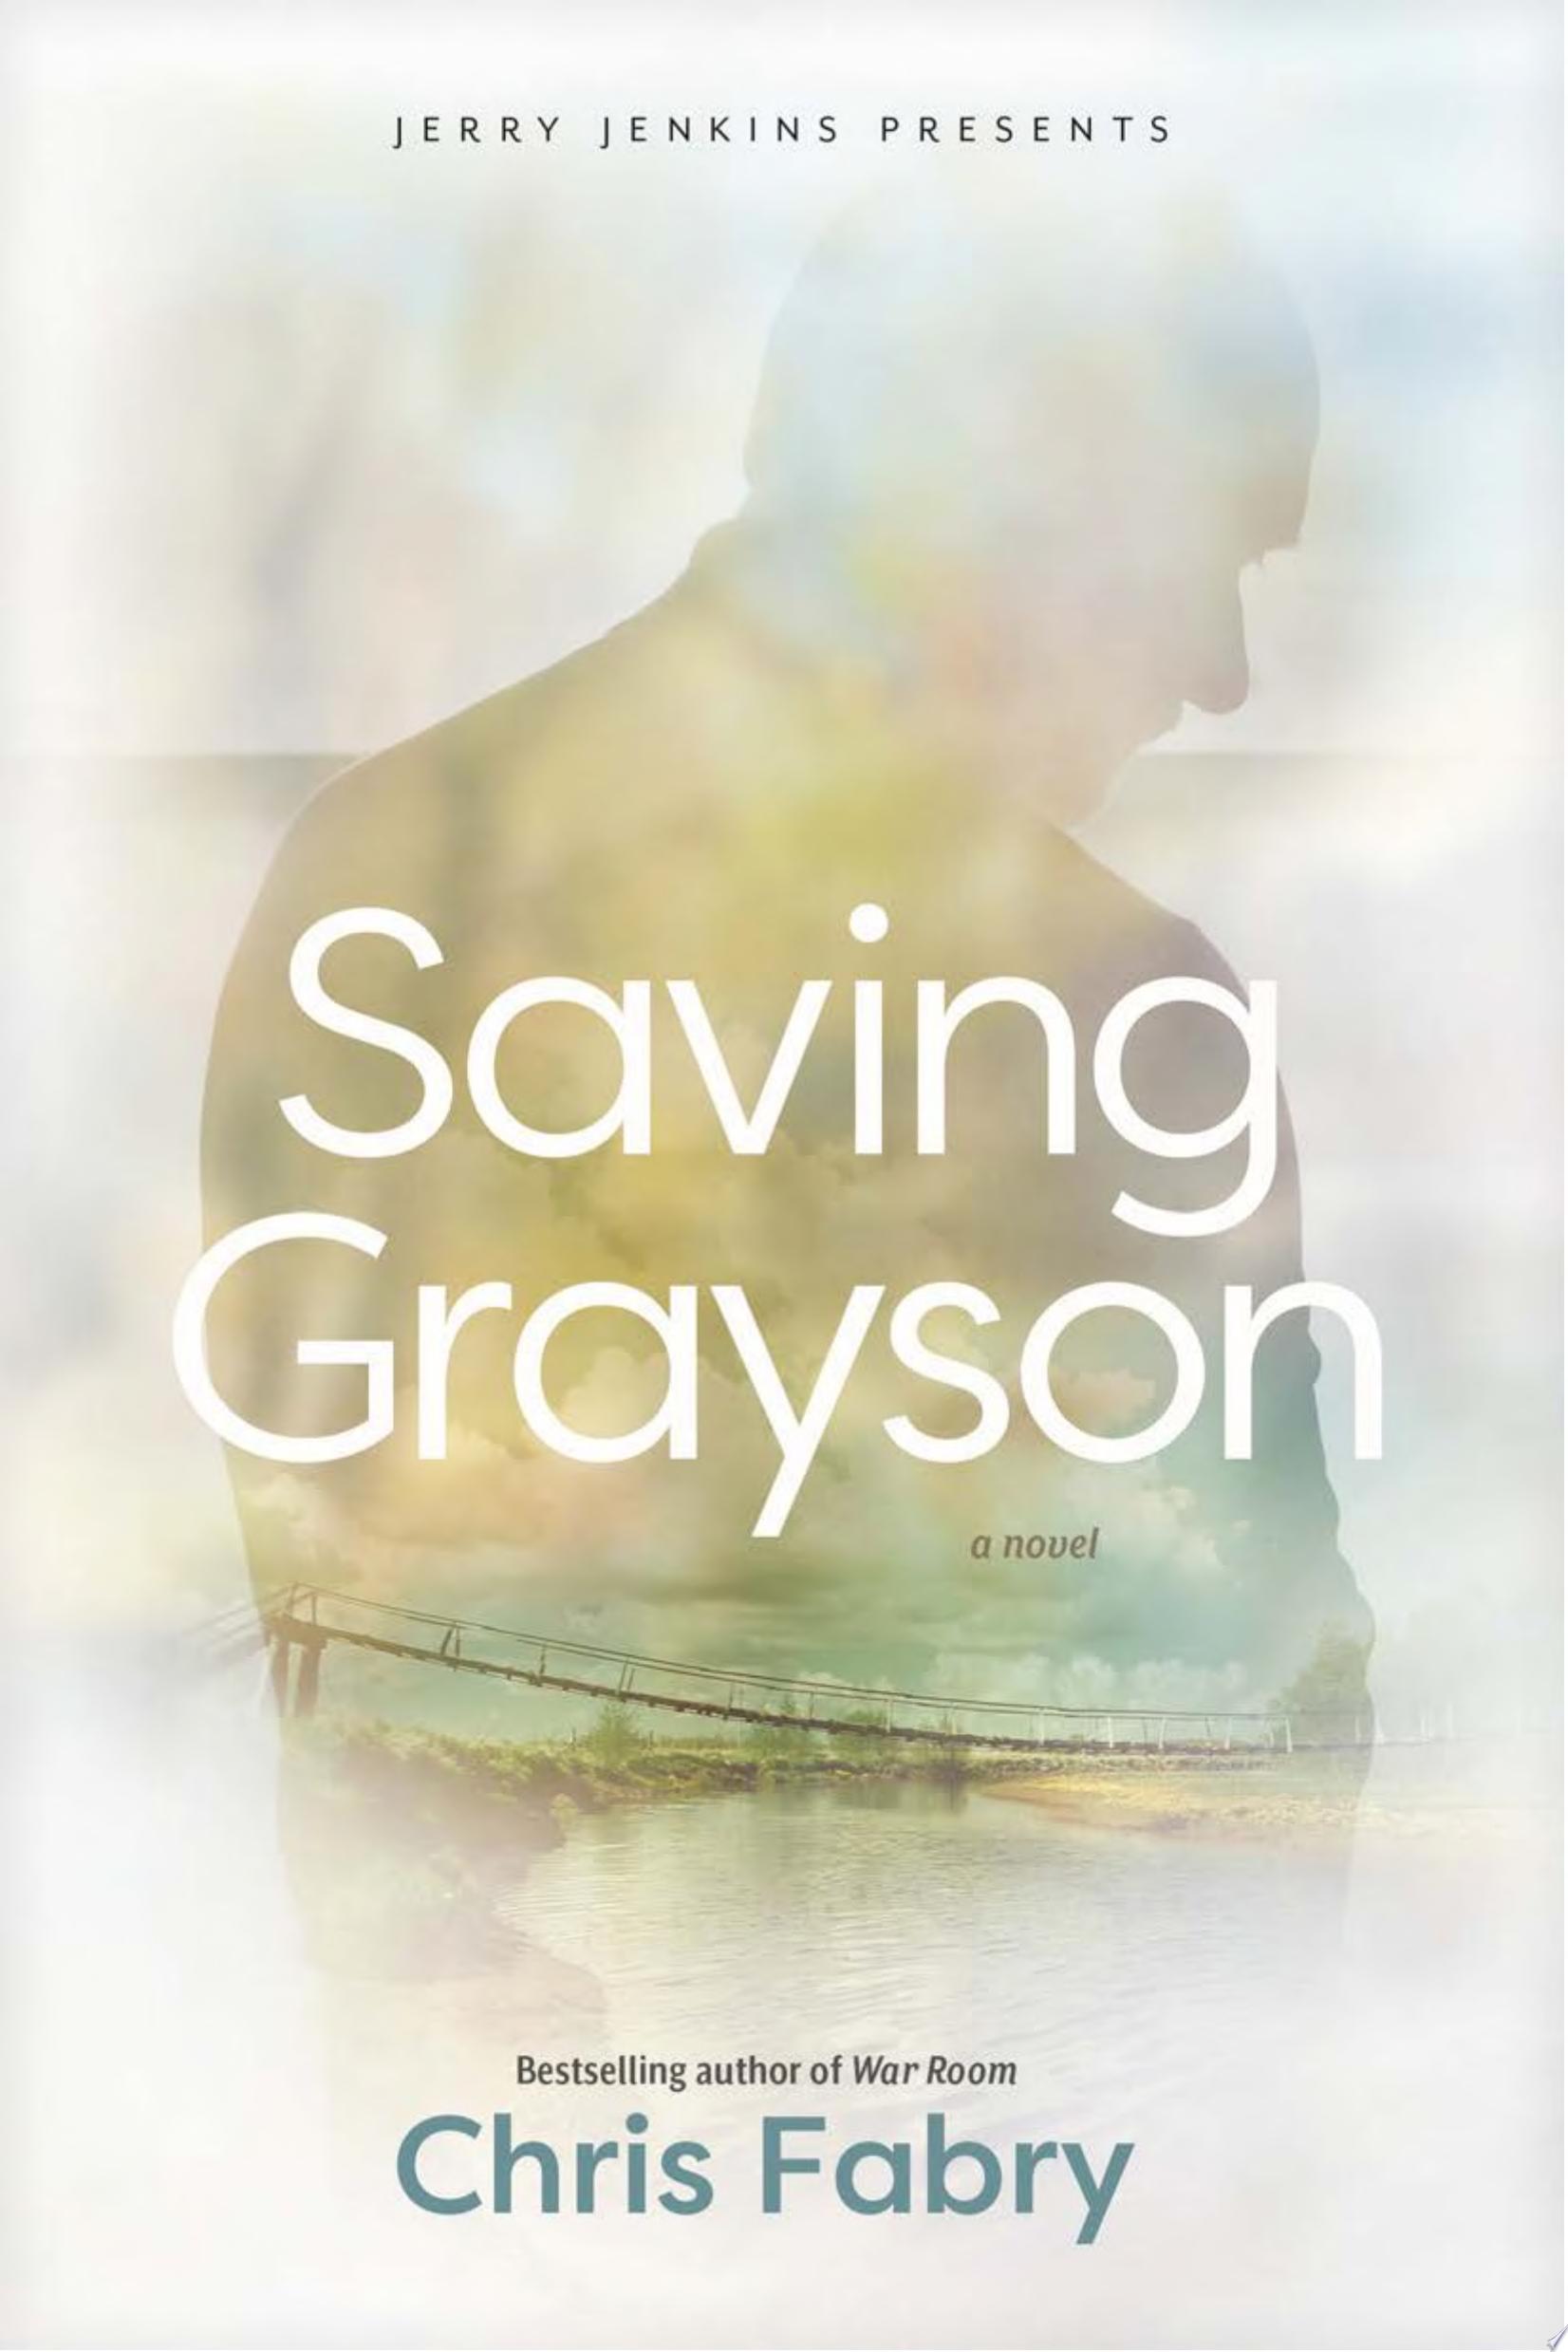 Image for "Saving Grayson"